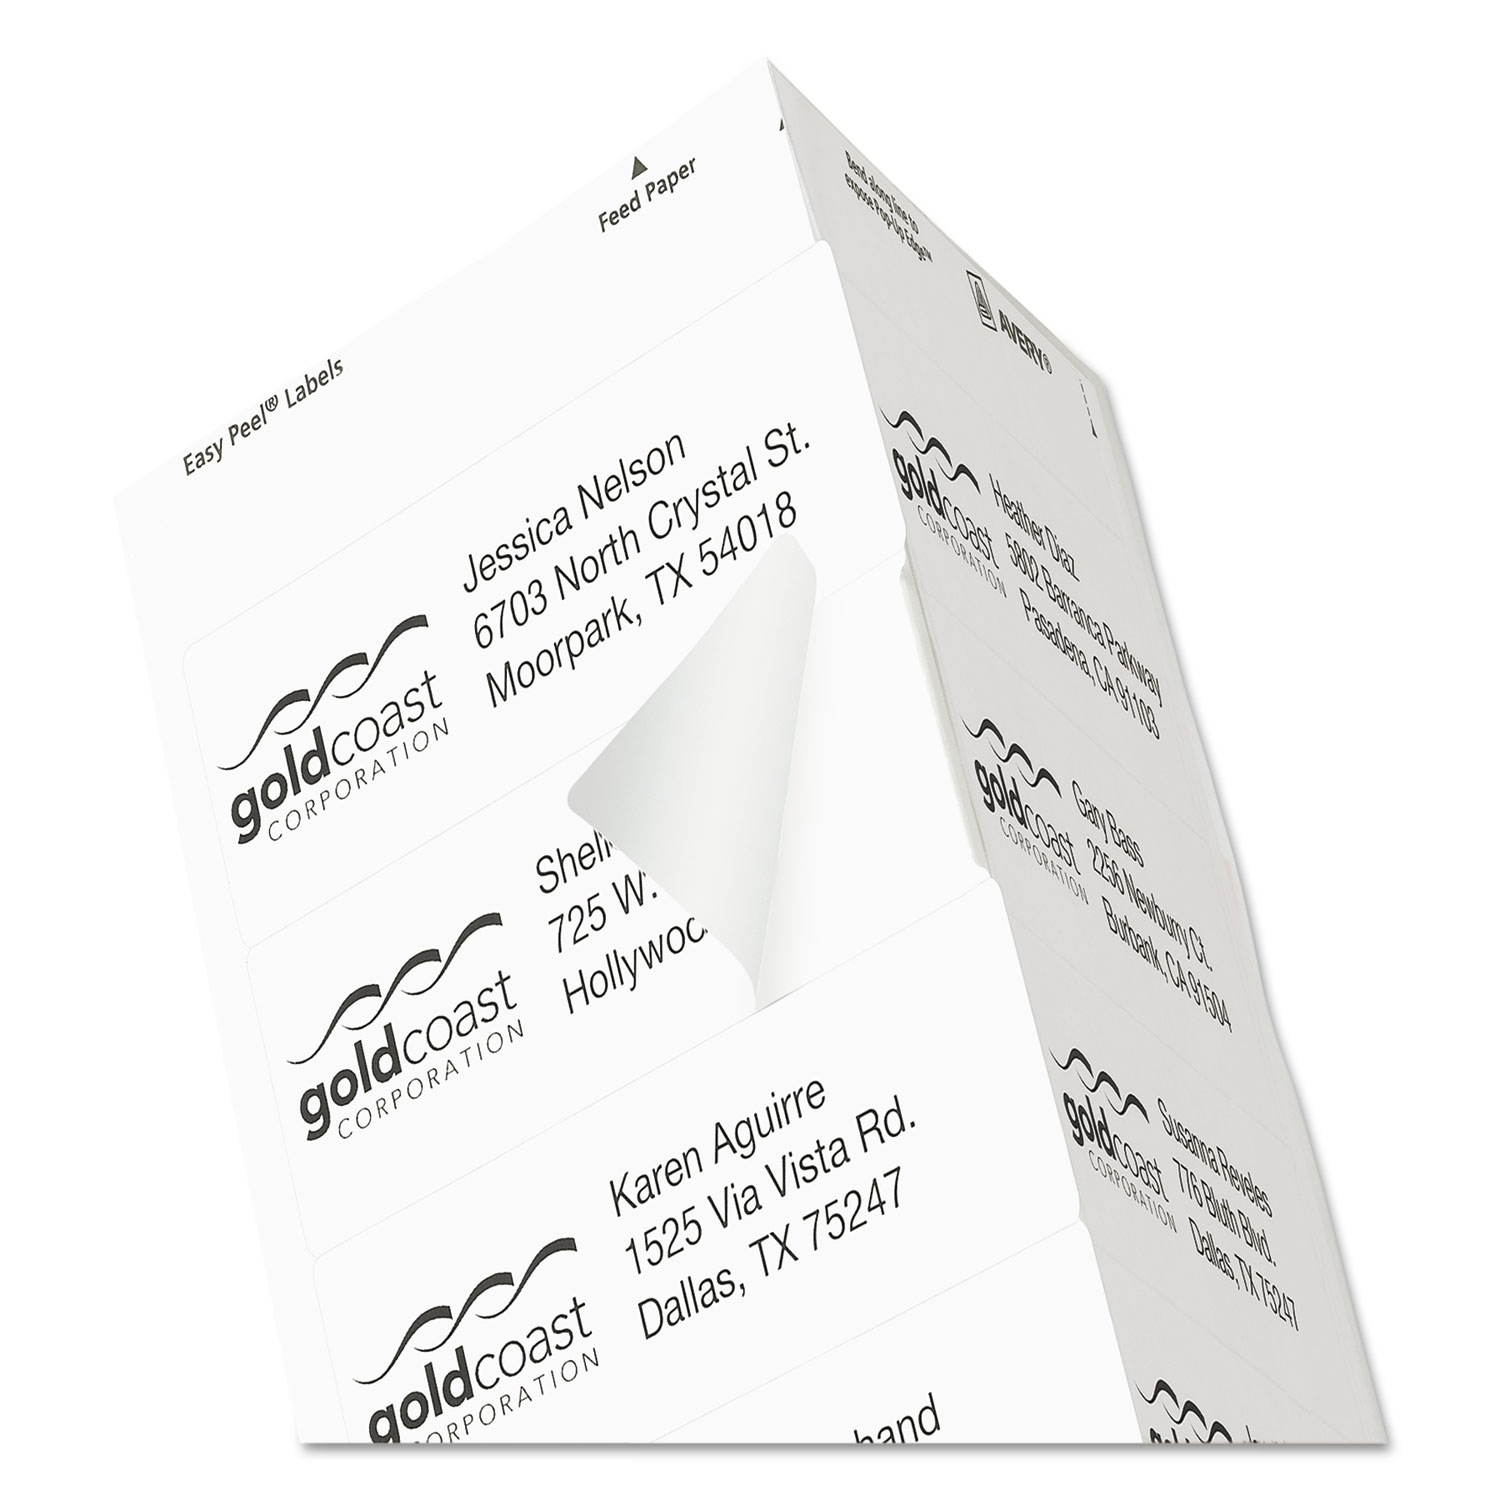 Easy Peel Mailing Address Labels, Inkjet, 1 1/3 x 4, White, 350/Pack